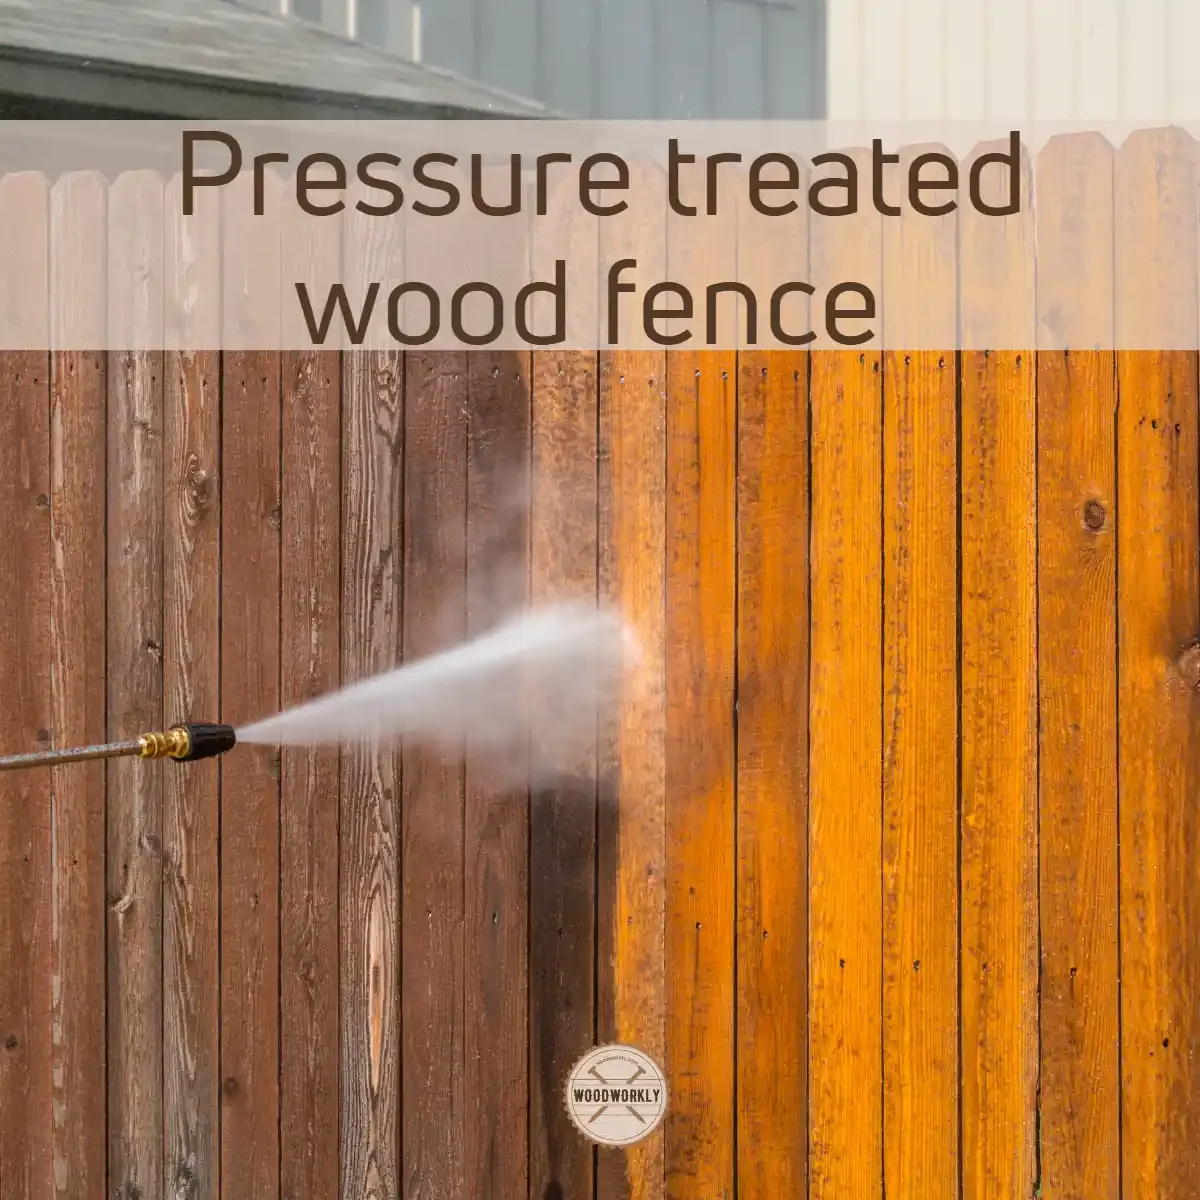 Pressure treated wood fence